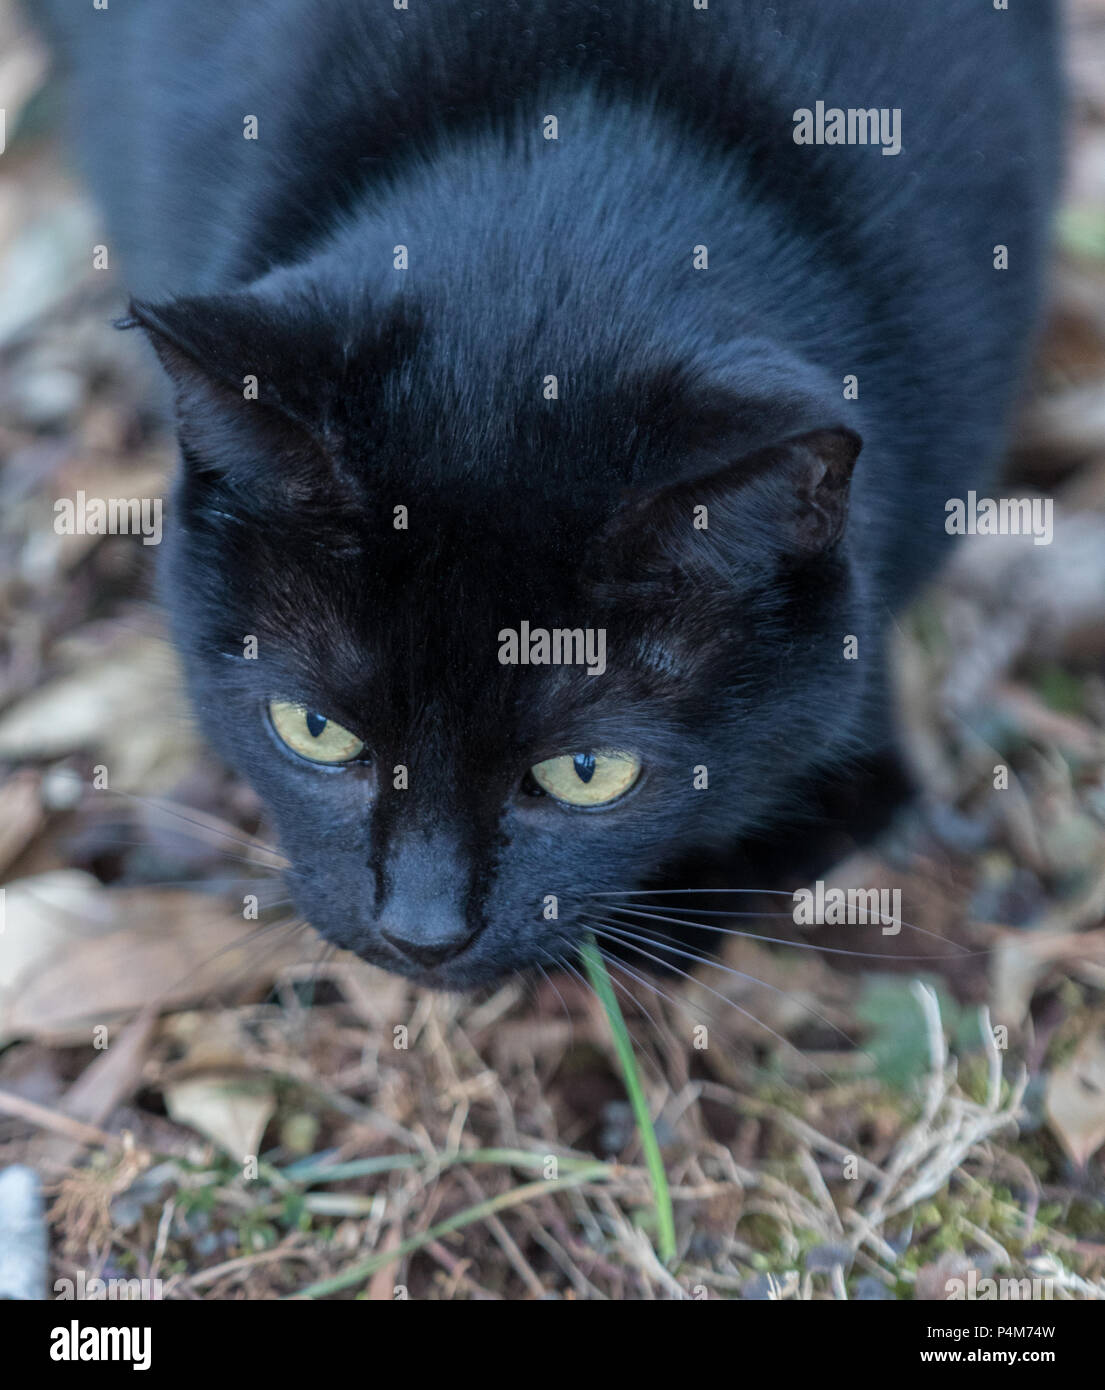 Eine schwarze Katze, fokussiert und bereit zu stürzen, von oben geschossen. Stockfoto